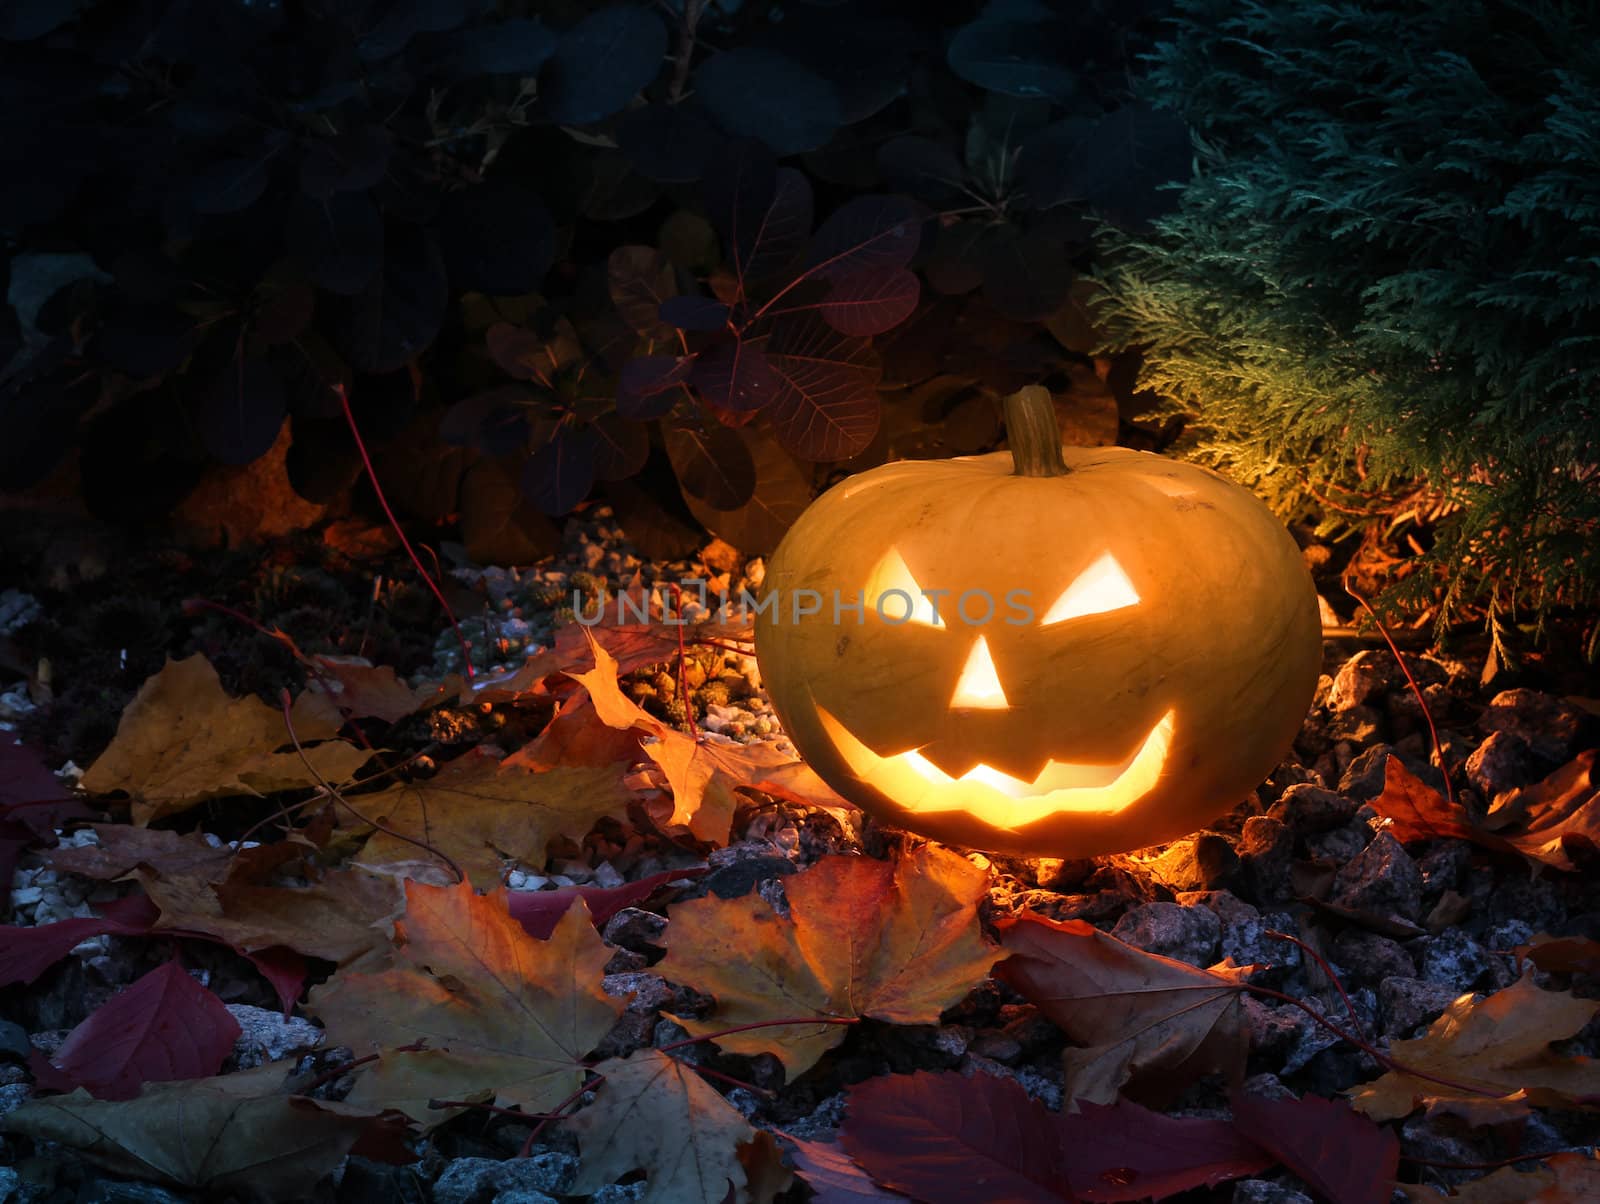 Halloween pumpkin in colorful garden by anterovium